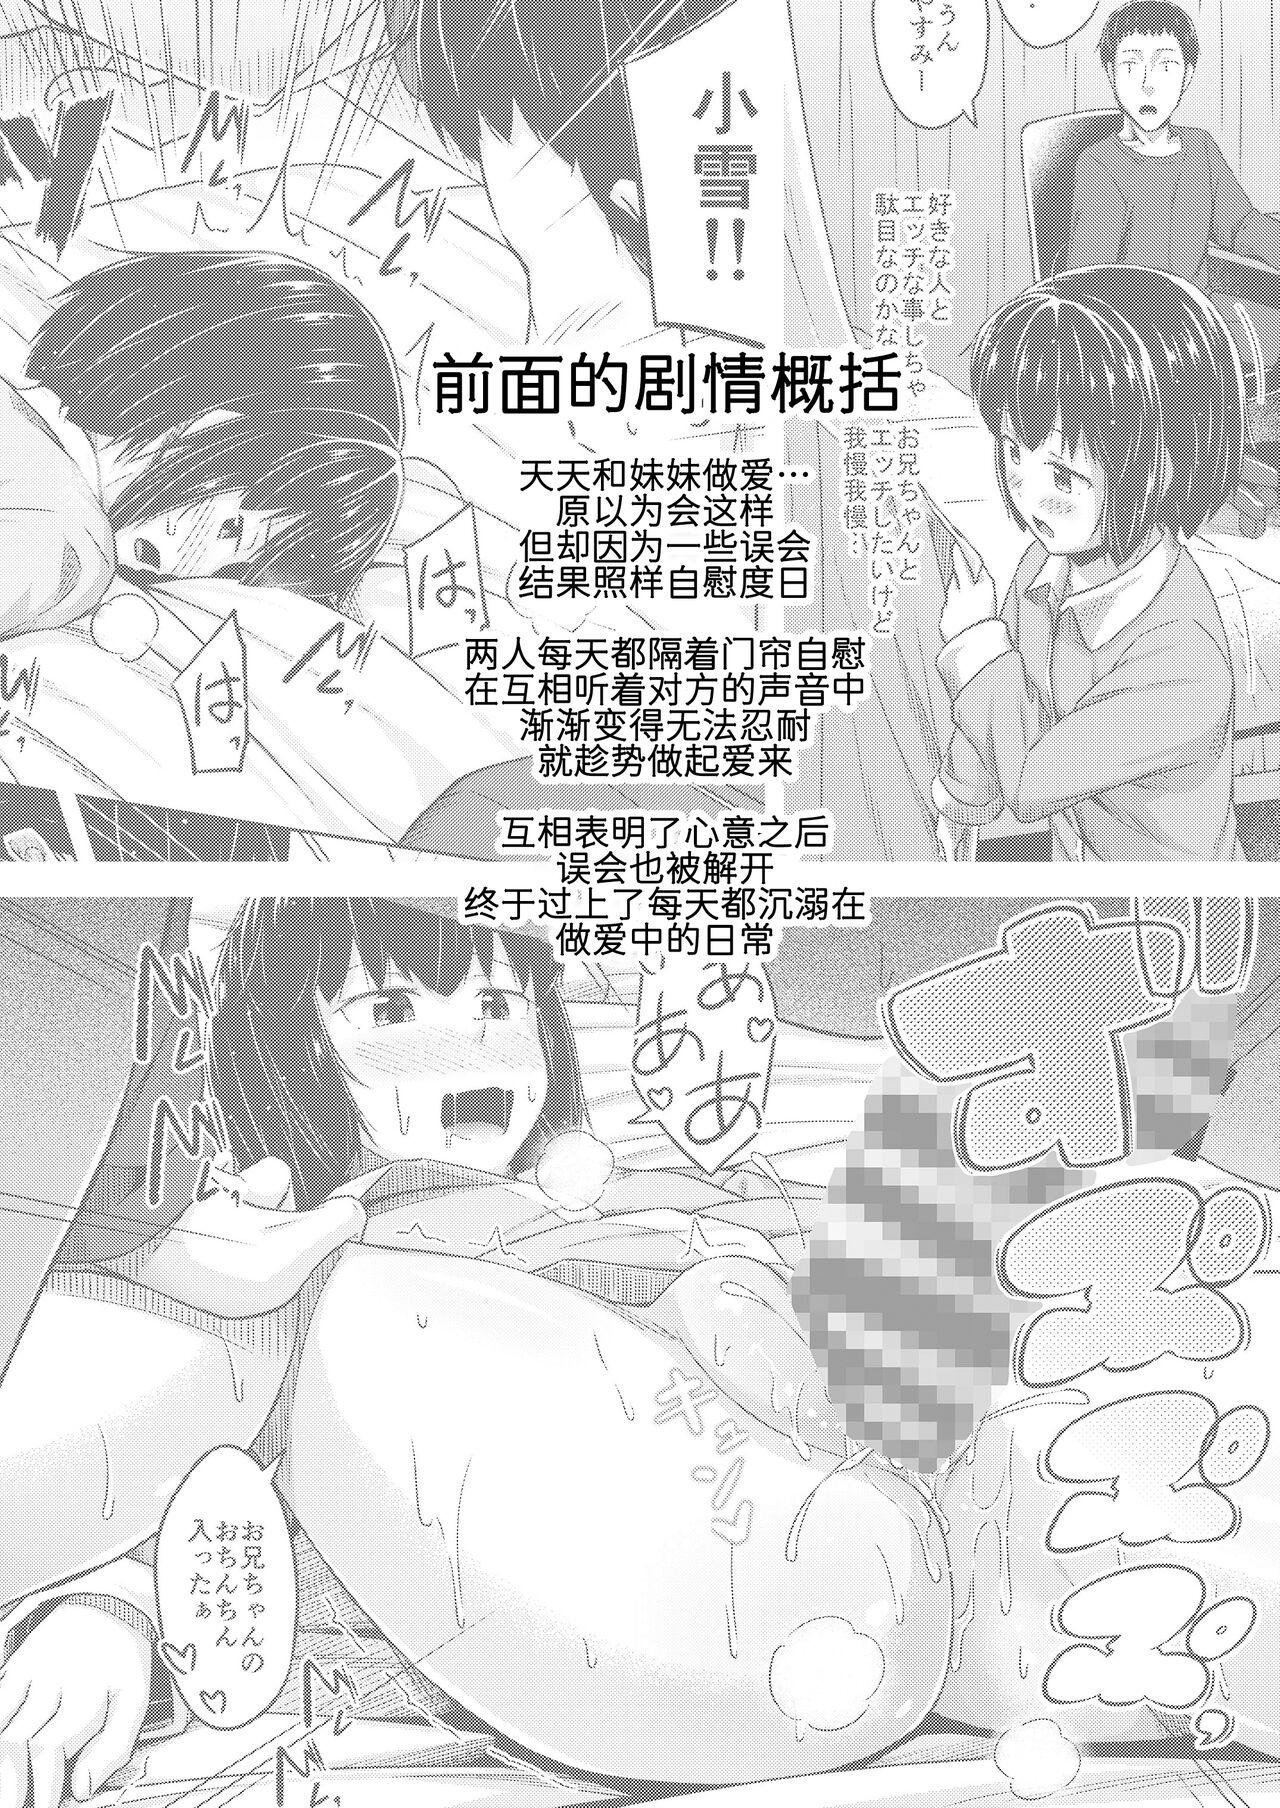 Cumming Imouto to Ore no Onanie Jijou 3 - Original Submission - Page 4